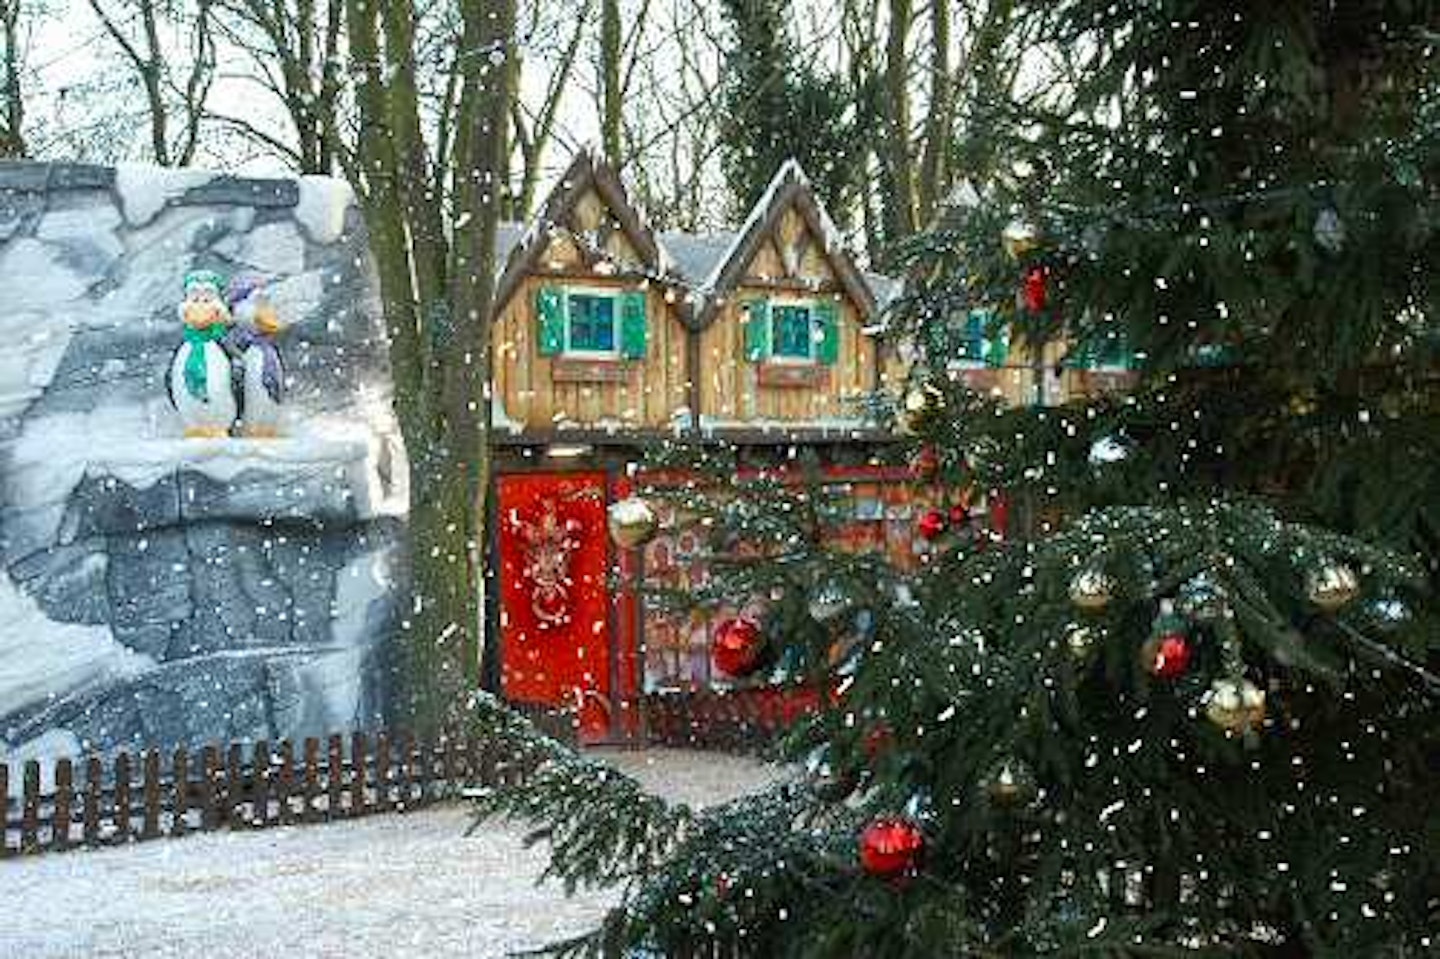 10) Winter Wonderland, Shopshire